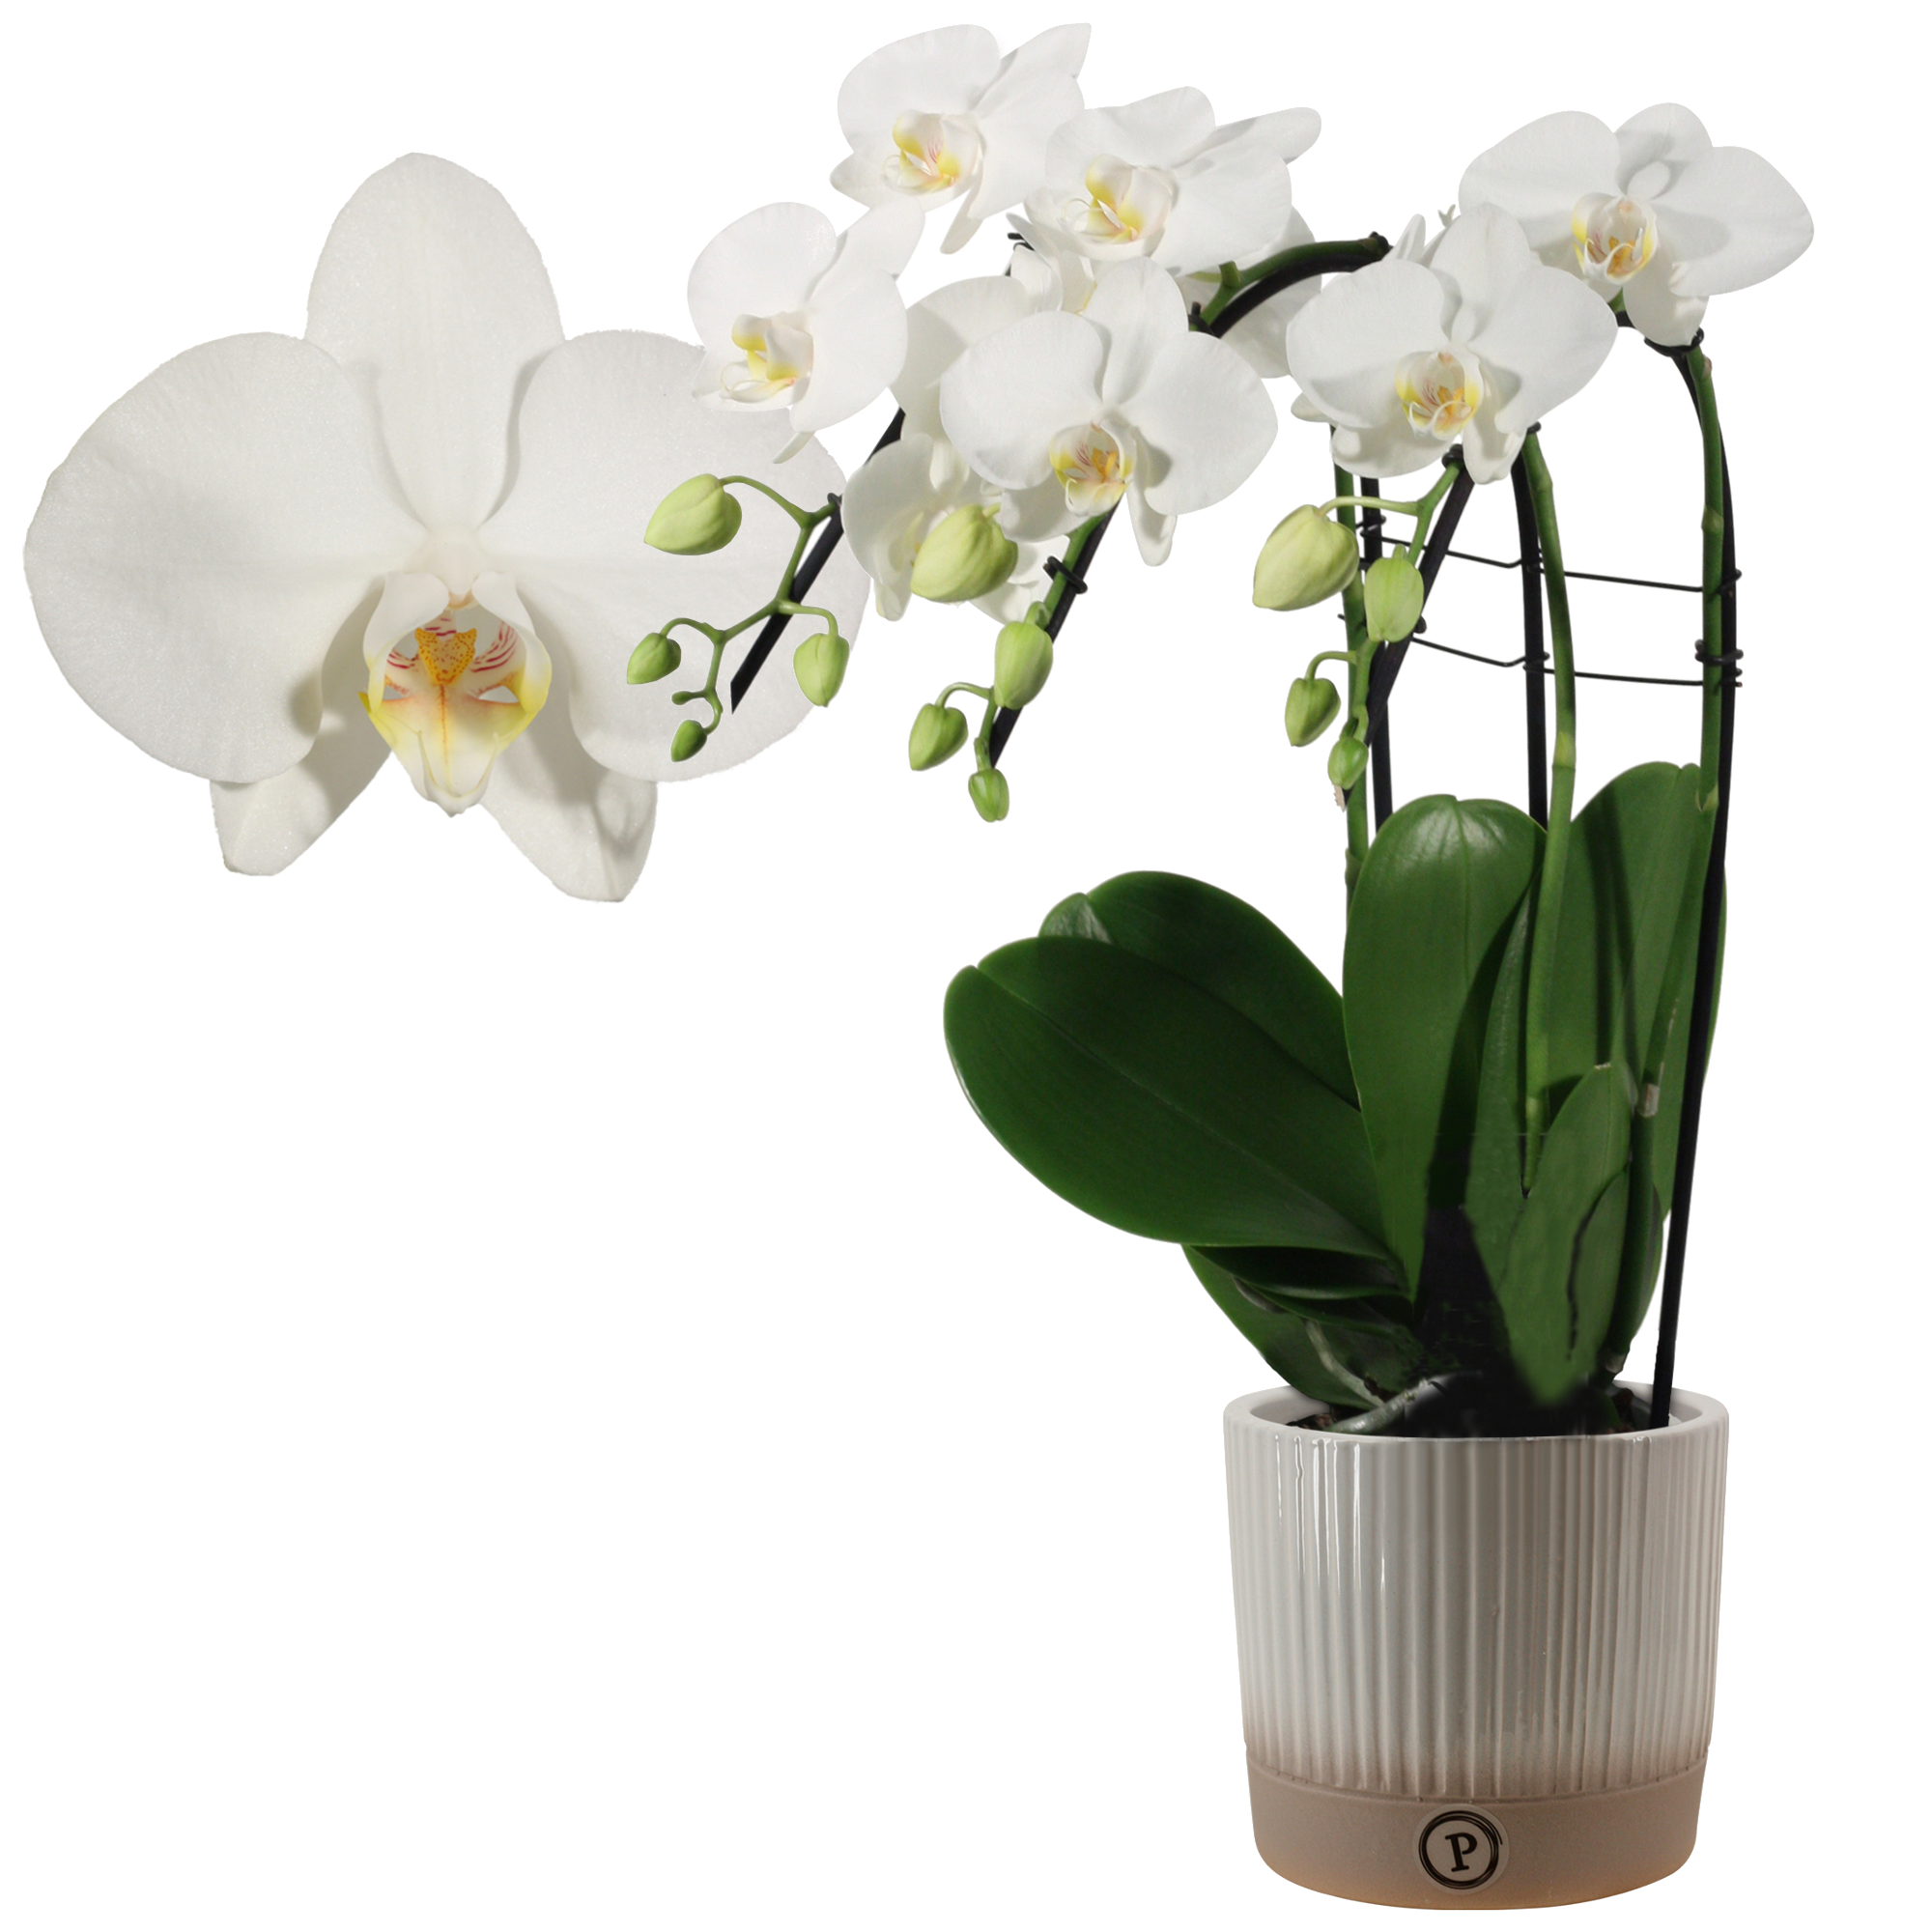 Schmetterlingsorchidee 'Cascade' 3 Rispen weiß, 12 cm Keramiktopf + product picture